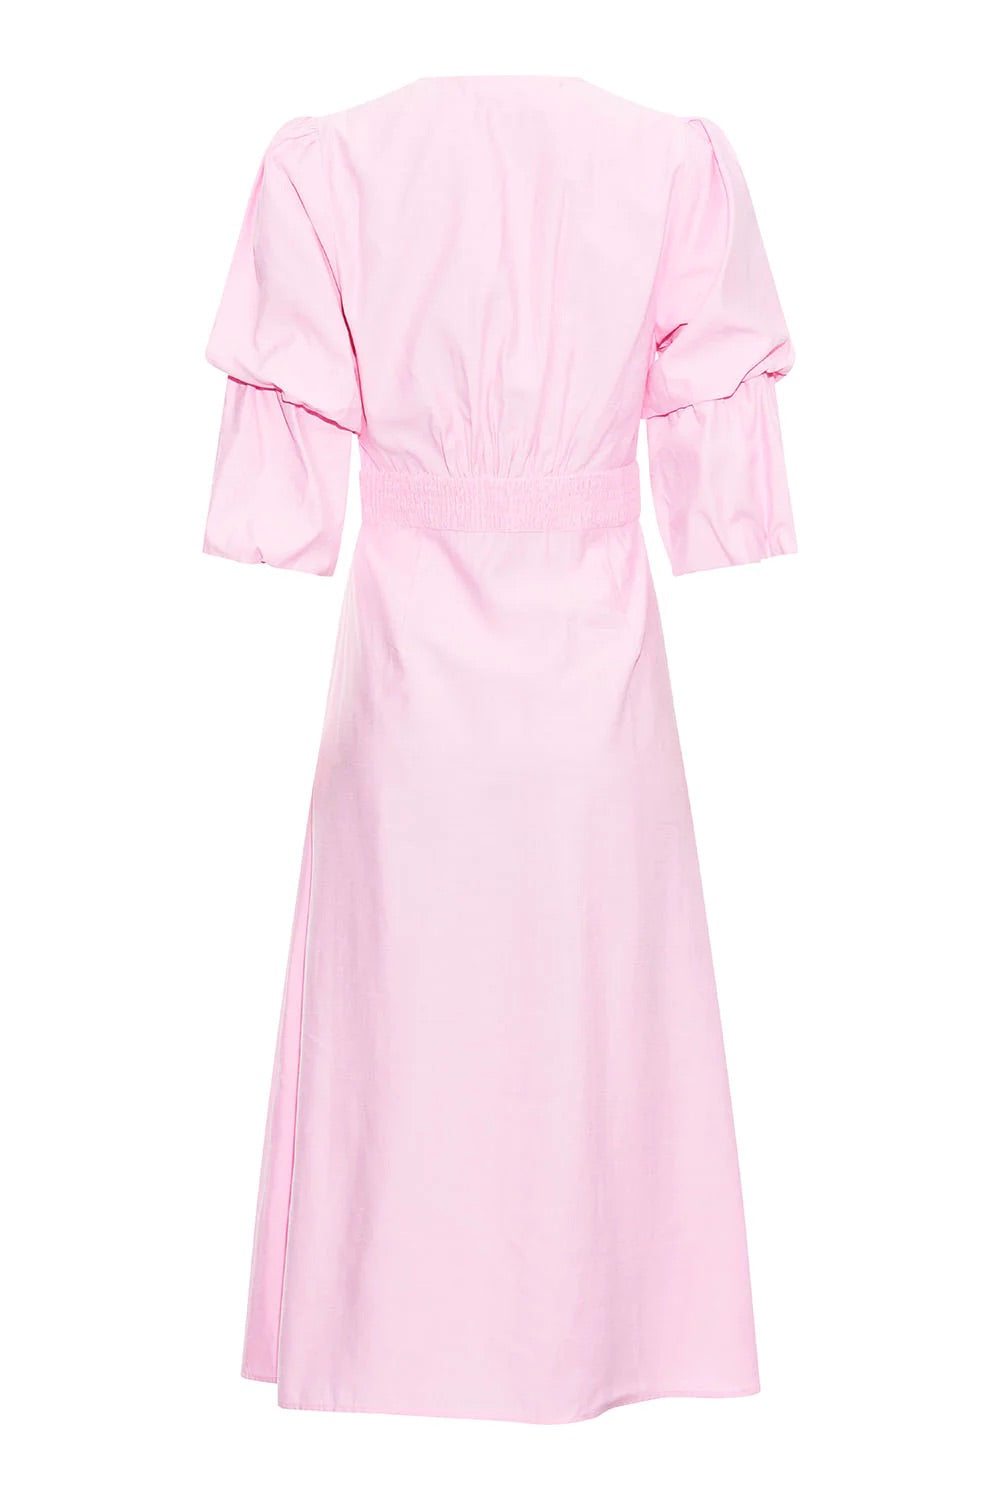 Loma Dress - Pink